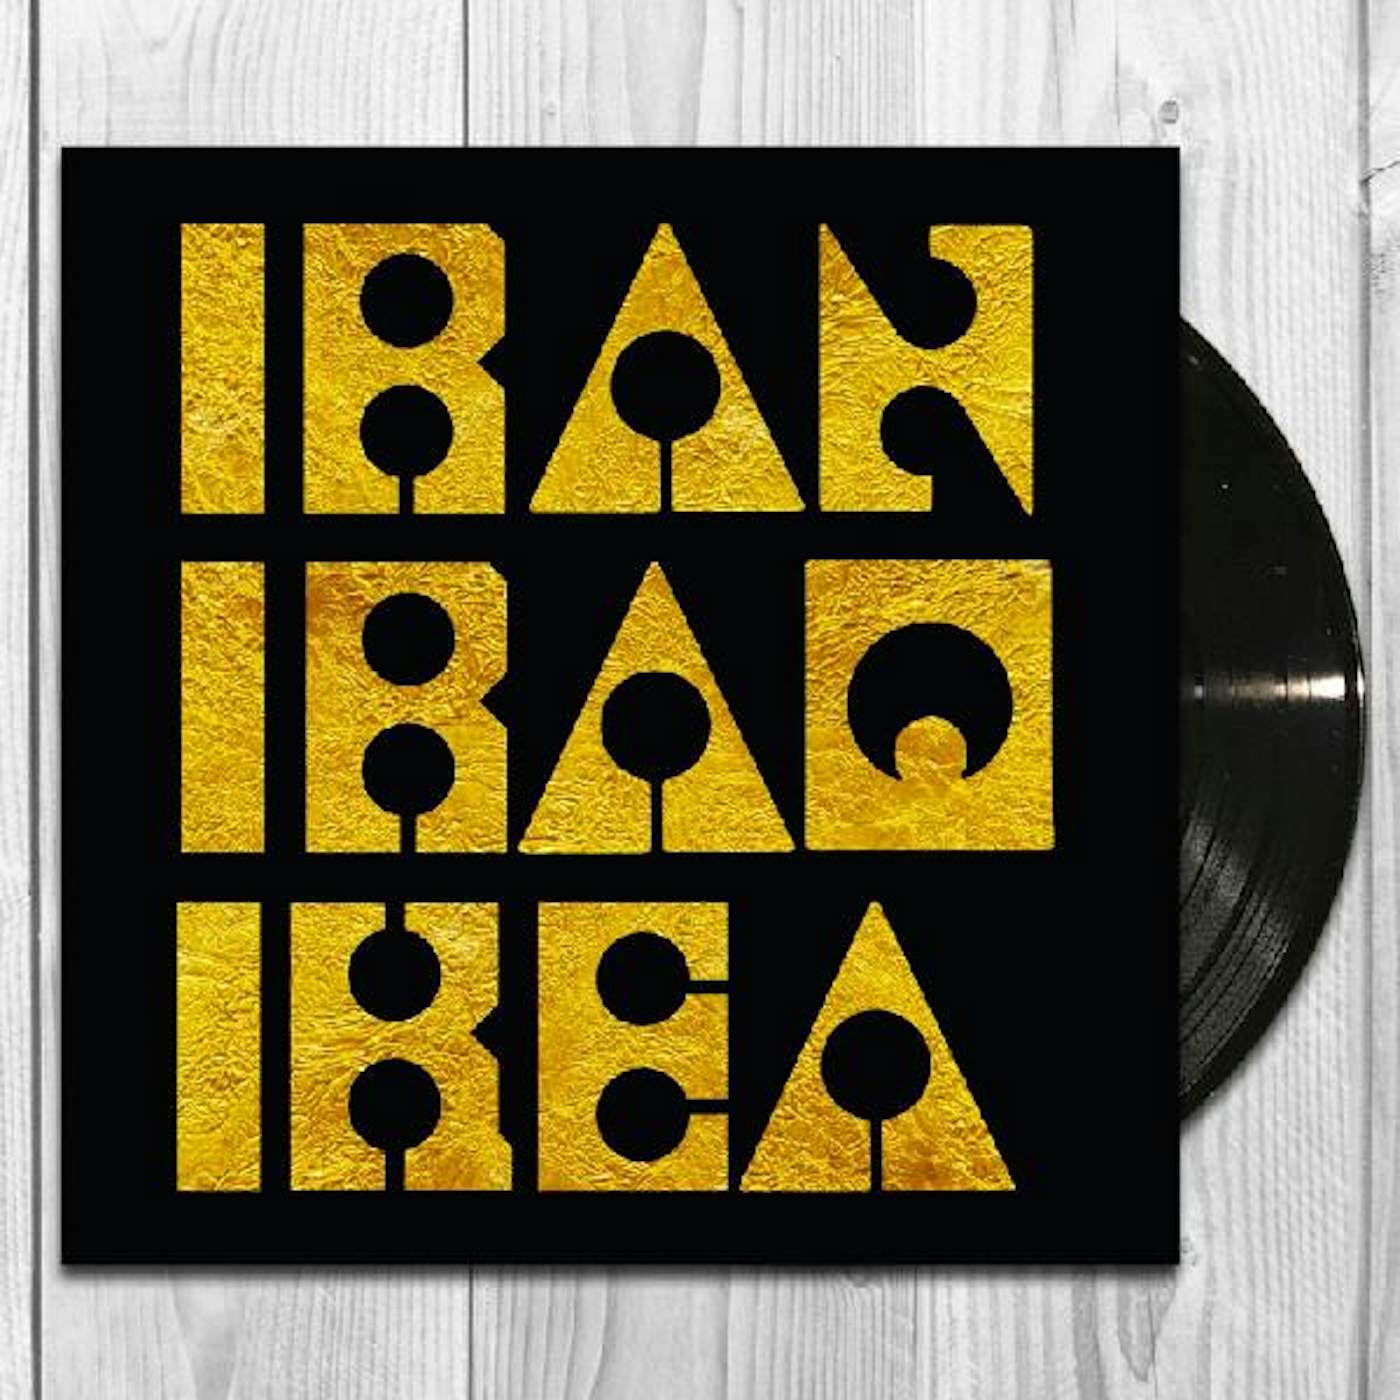 Les Big Byrd Iran Iraq IKEA Vinyl Record